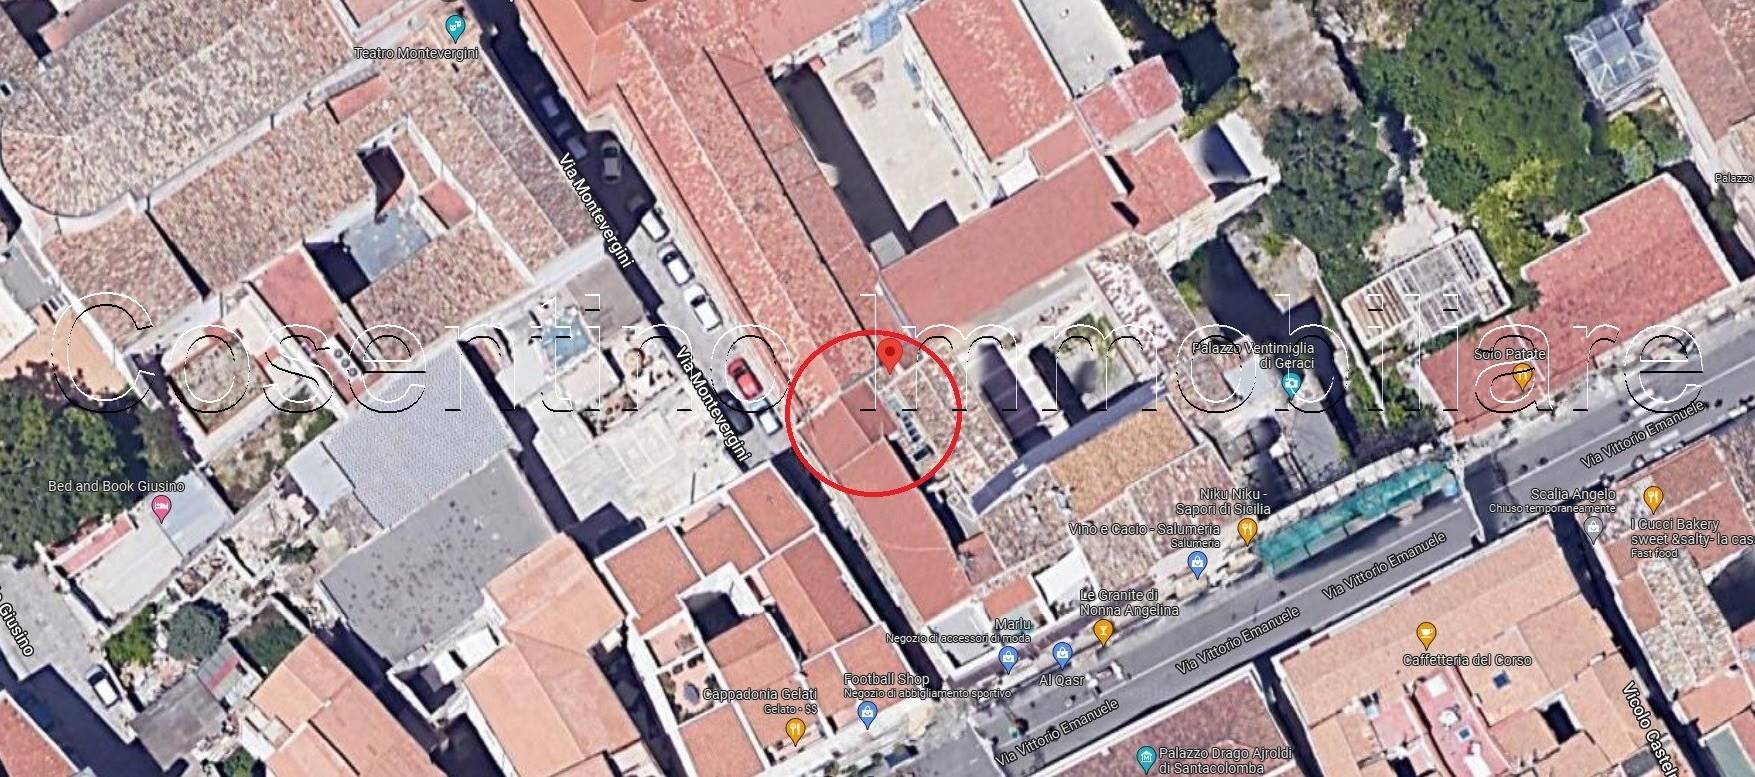 Attività commerciale in affitto/gestione, Palermo centro storico